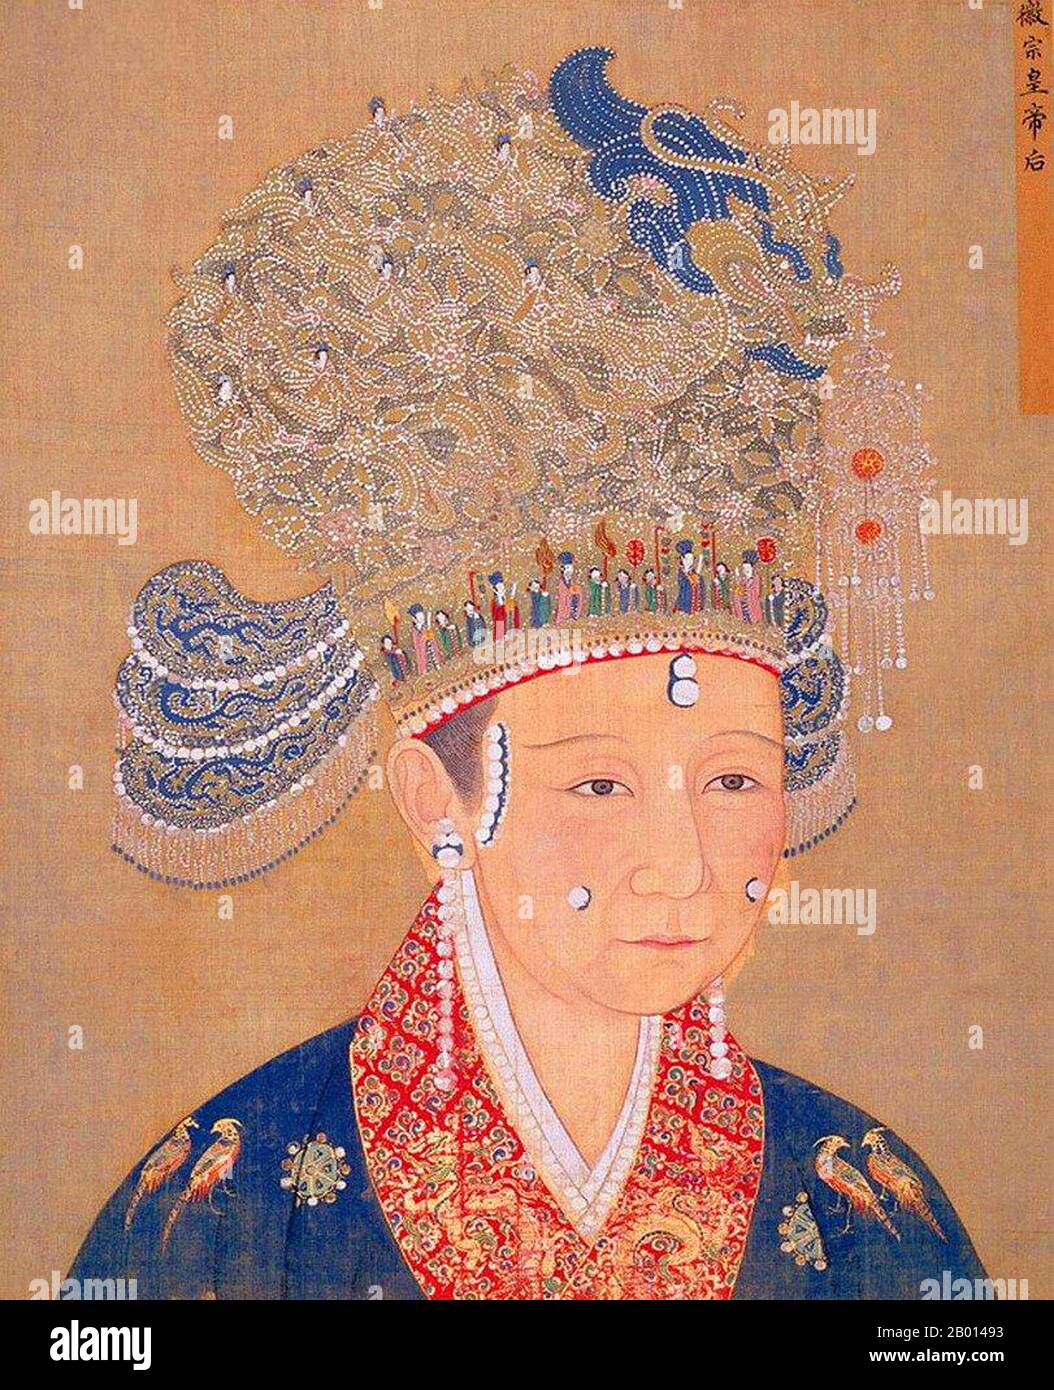 Cina: Imperatrice Zheng (1079-1130), consorte dell'Imperatore Huizong, ottavo sovrano della Dinastia Song (r.1100-1126). Pittura a scorrimento sospesa, c. 1100-1130. L'imperatrice Zheng, conosciuta anche come Xiansu, fu consorte all'Imperatore Huizong. Prestò servizio come donna in attesa all'imperatrice Xiang, la madre di Huizong, e gli fu presentata come un regalo di nozze dall'imperatrice. Quando l'imperatrice Wang passò nel 1110, Zheng fu nominato nuovo imperatrice dell'Imperatore Huizong, un'elevazione che fu controversa a causa delle sue umili origini. Fu catturata con suo marito dal Jurchen durante l'incidente di Jingkang e inviata in esilio. Foto Stock